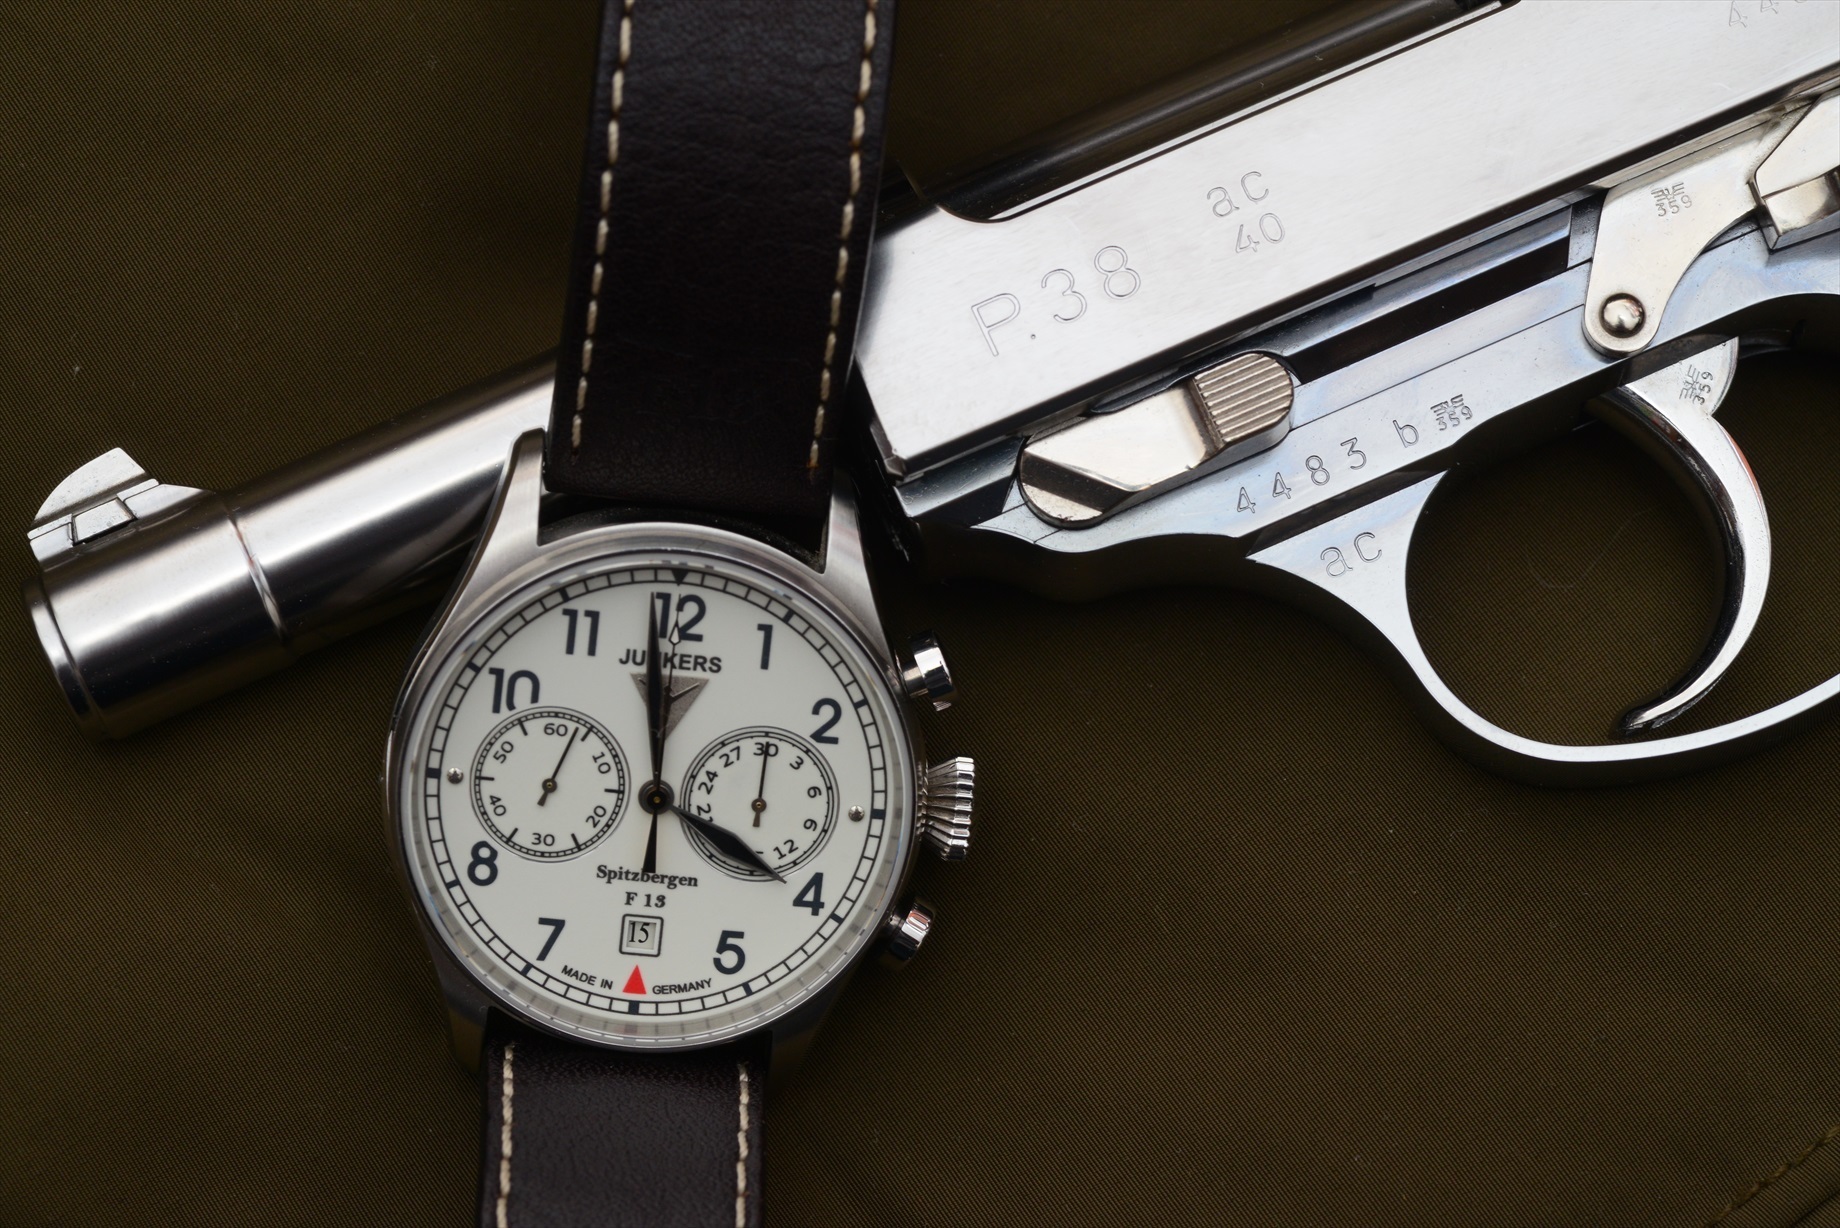 ユンカース スピッツベルゲン F.13 - 腕時計(アナログ)